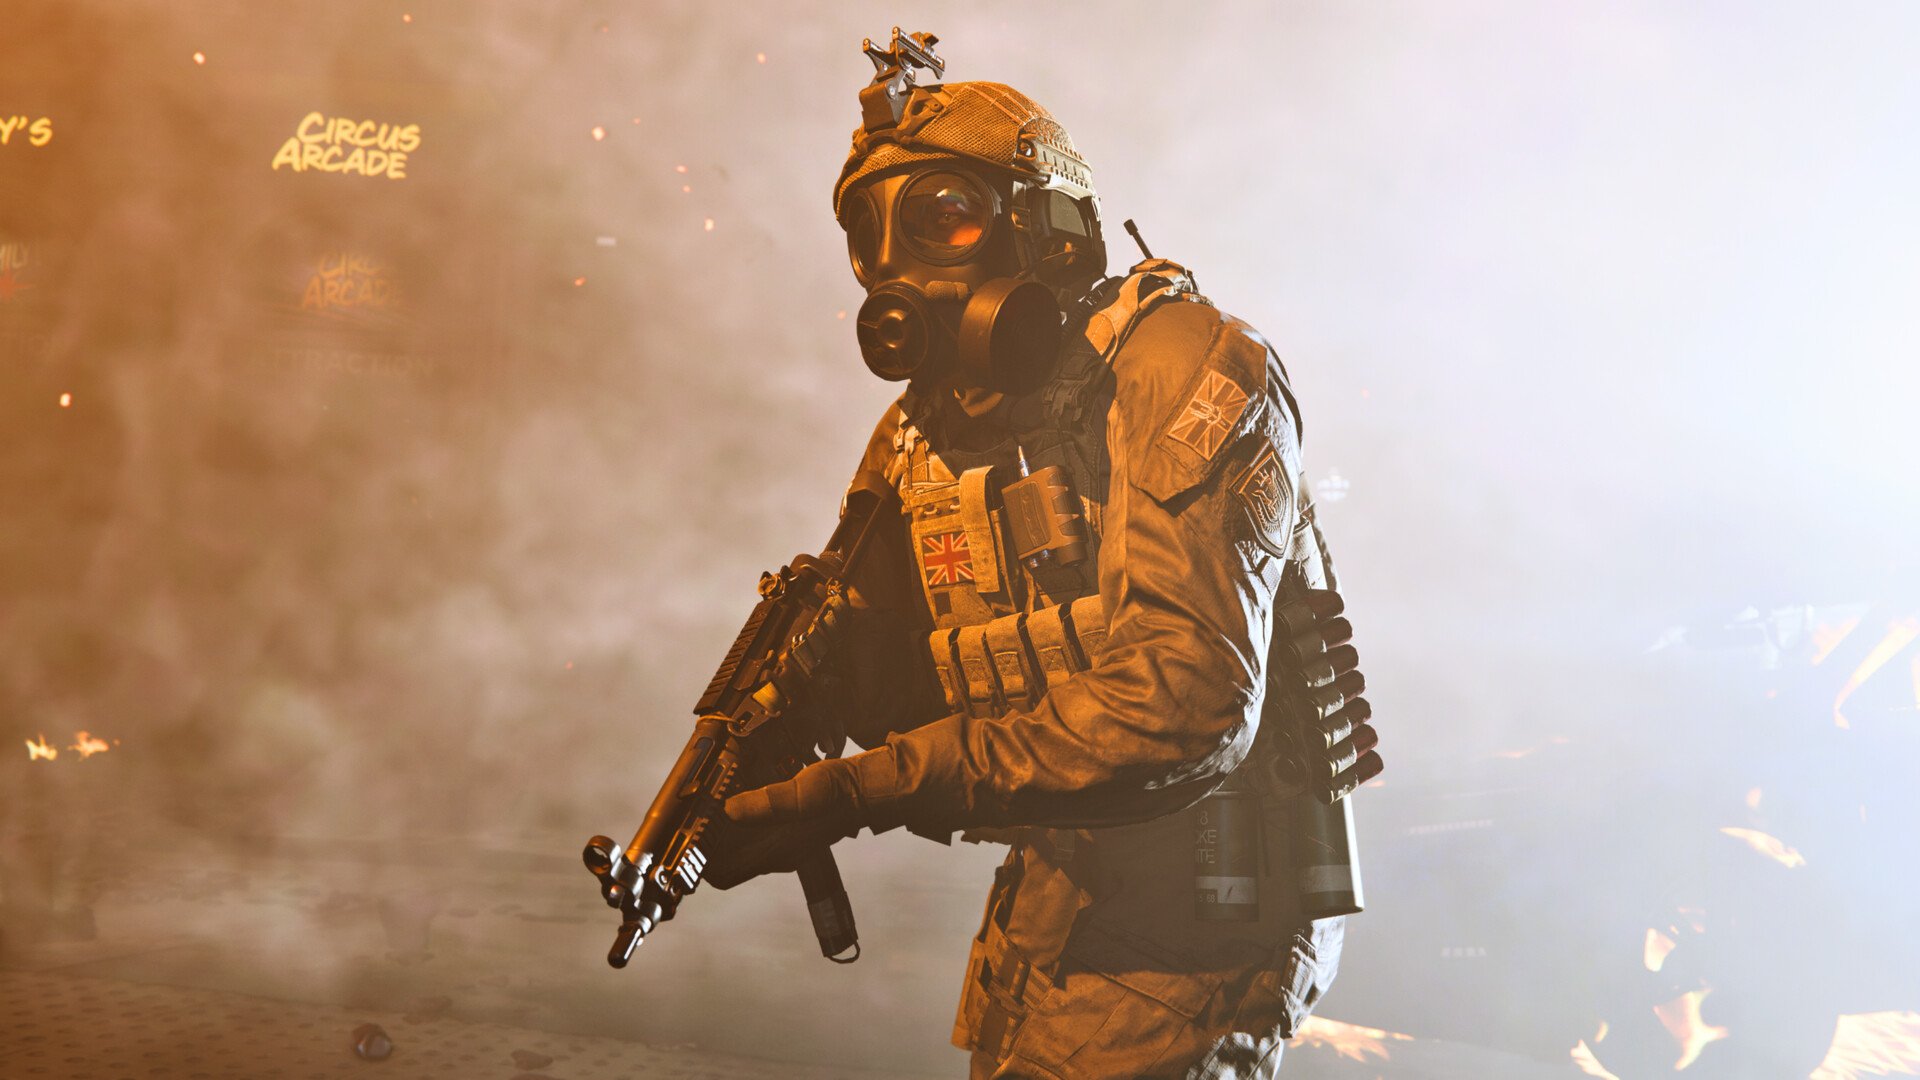 Call of Duty Modern Warfare 9